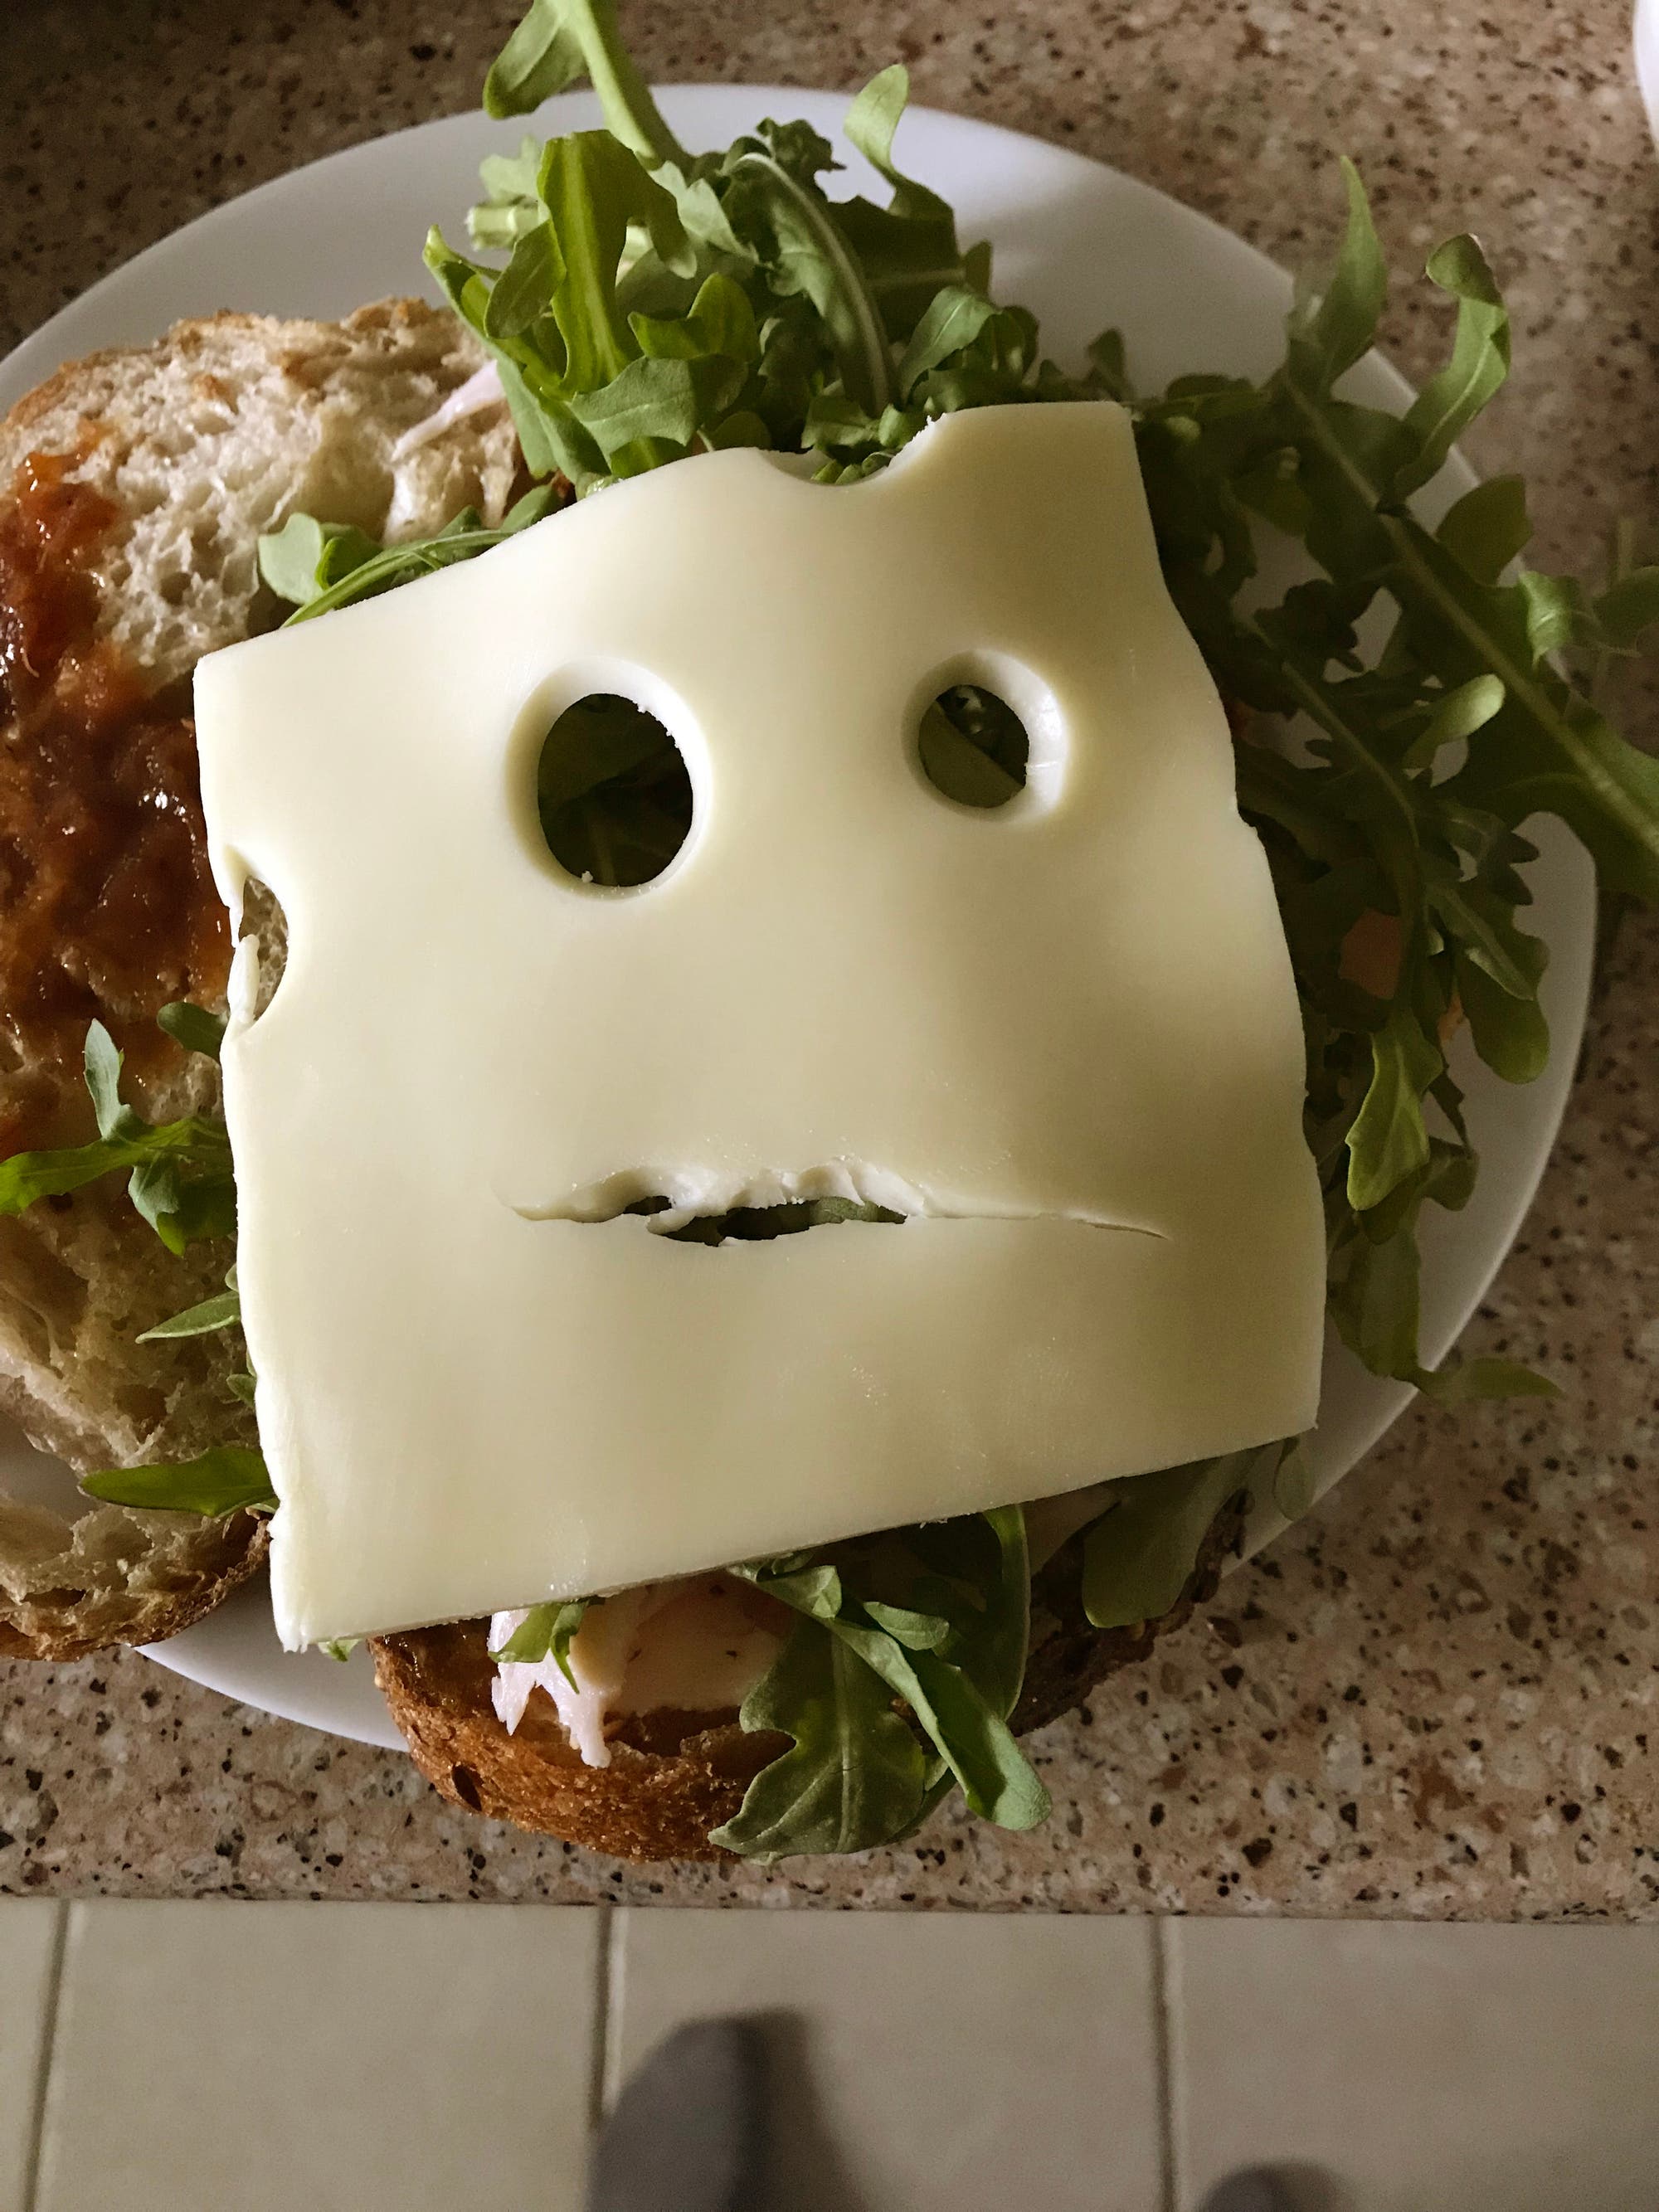 Belegtes Brot mit Rucola und einer Scheibe Käse, das wie ein Gesicht aussieht